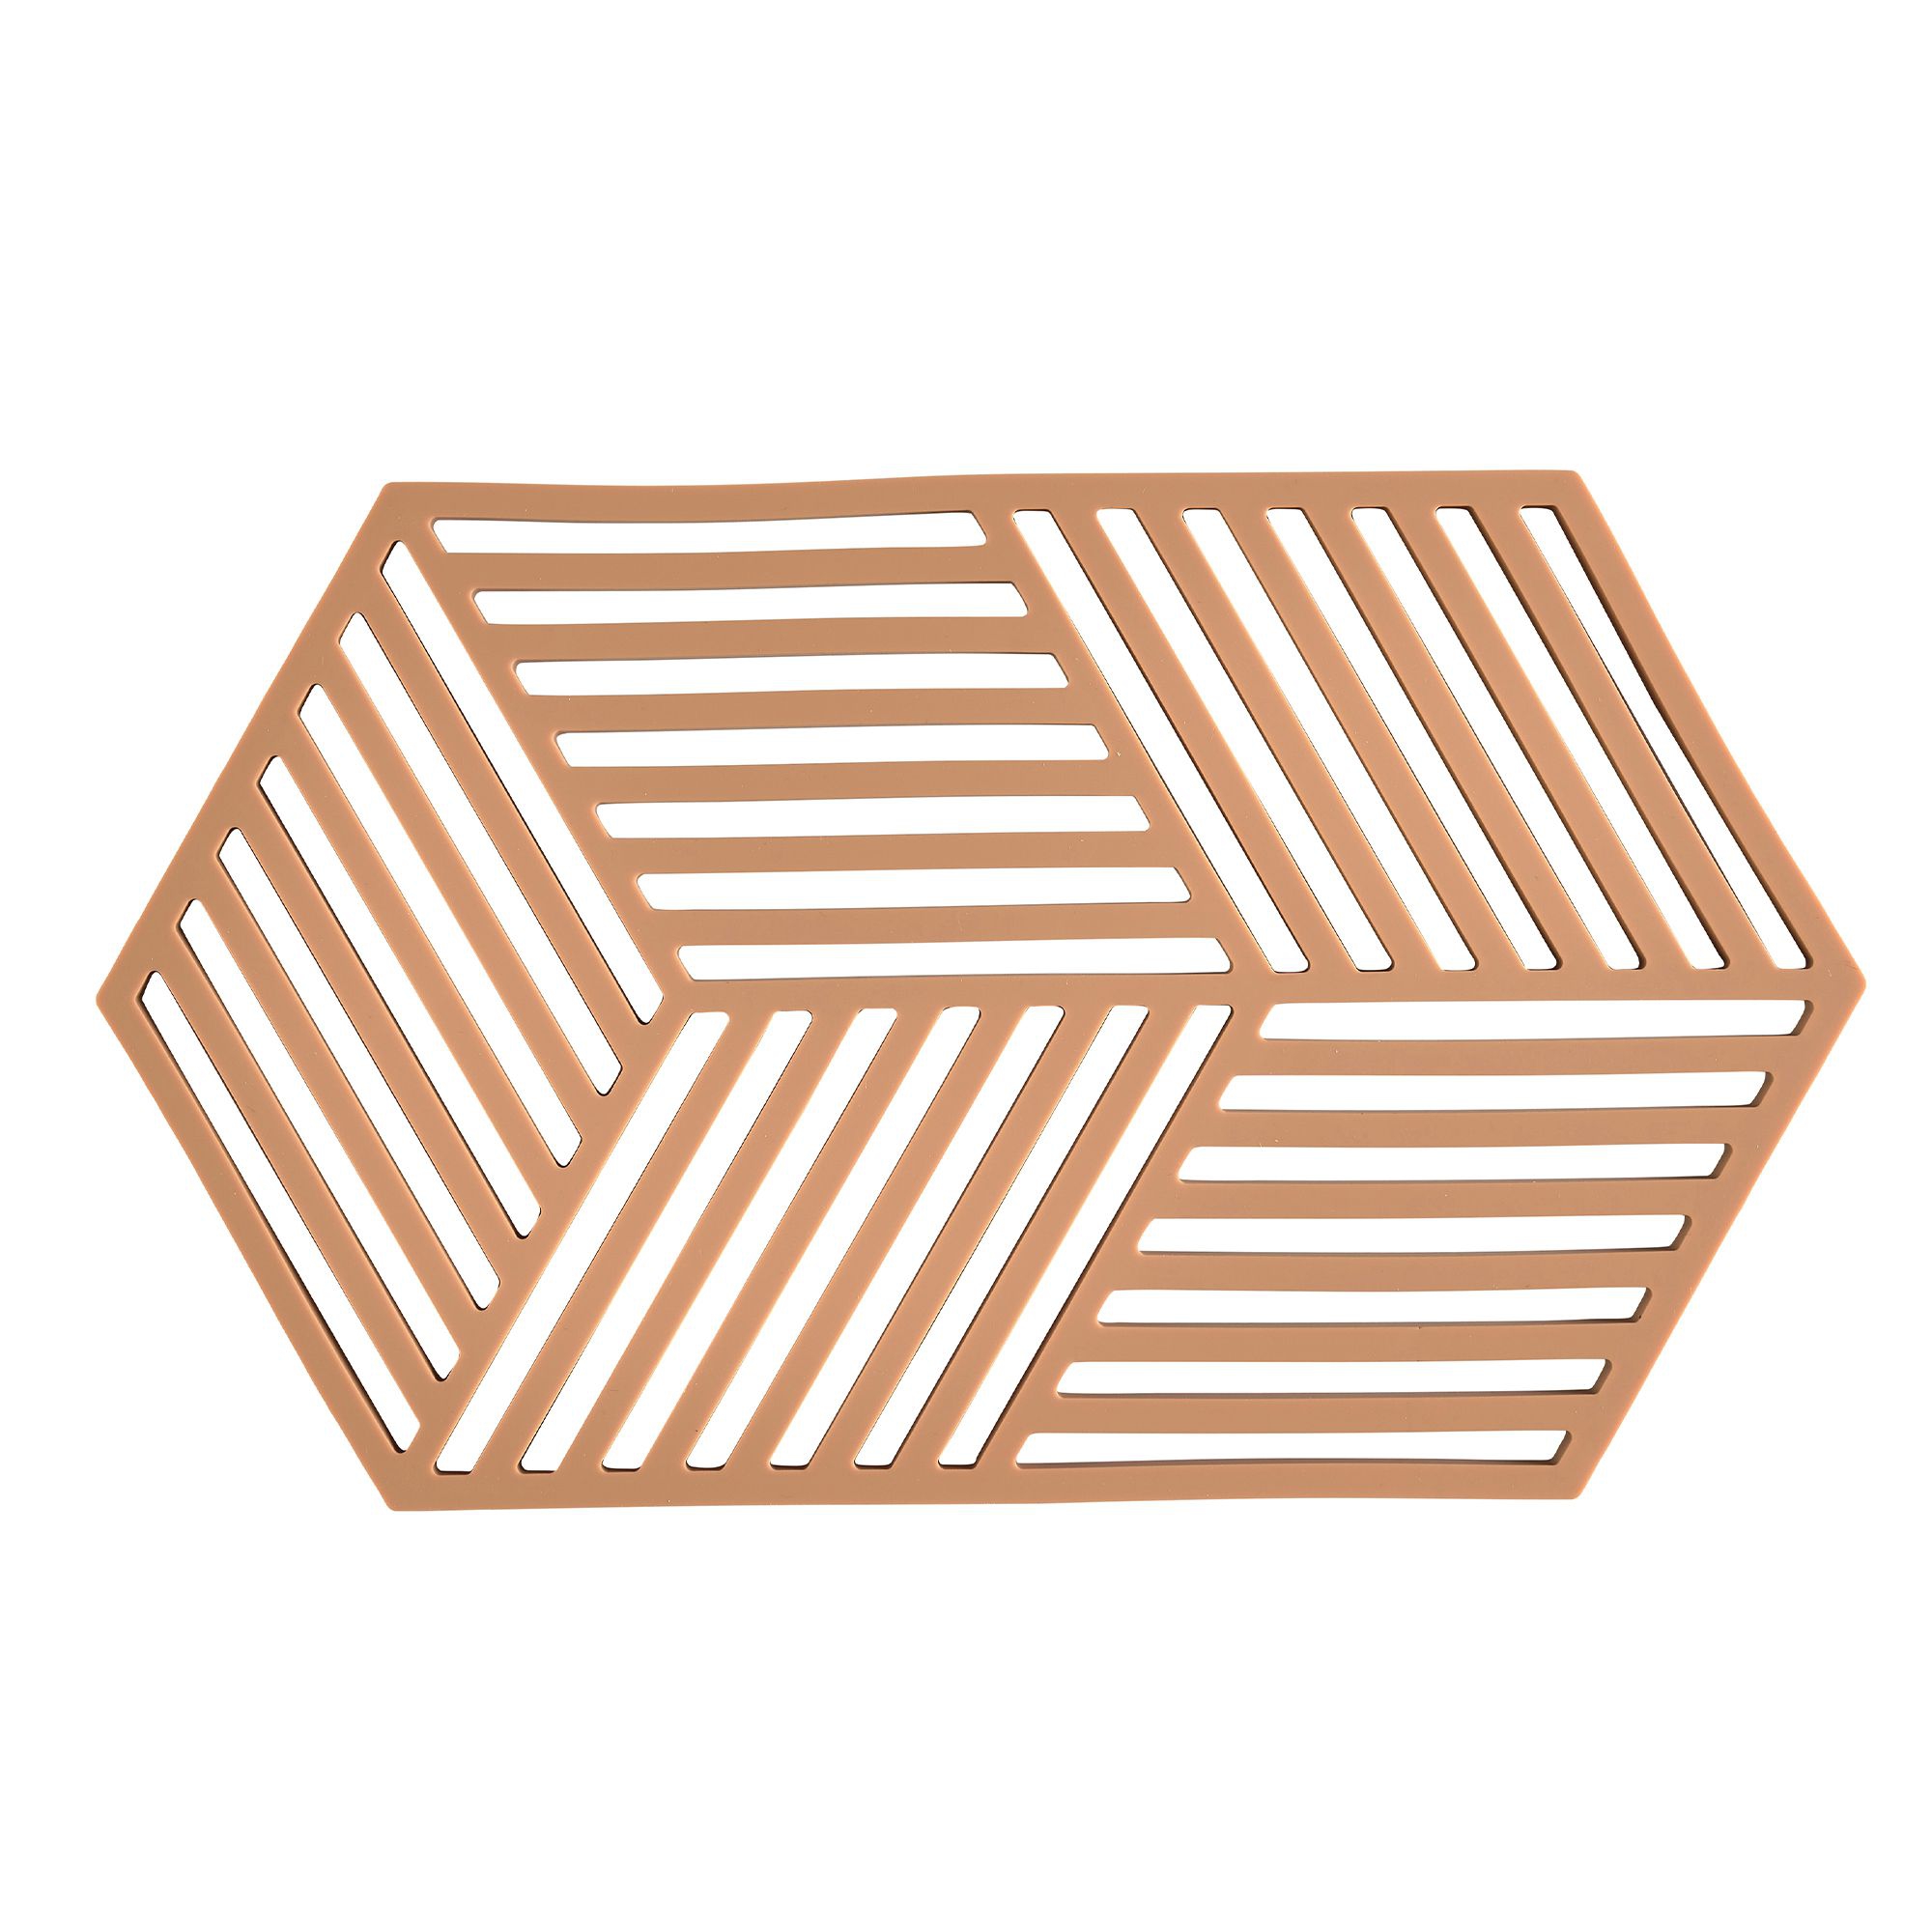 Zone - Hexagon Trivet - Light Terracotta